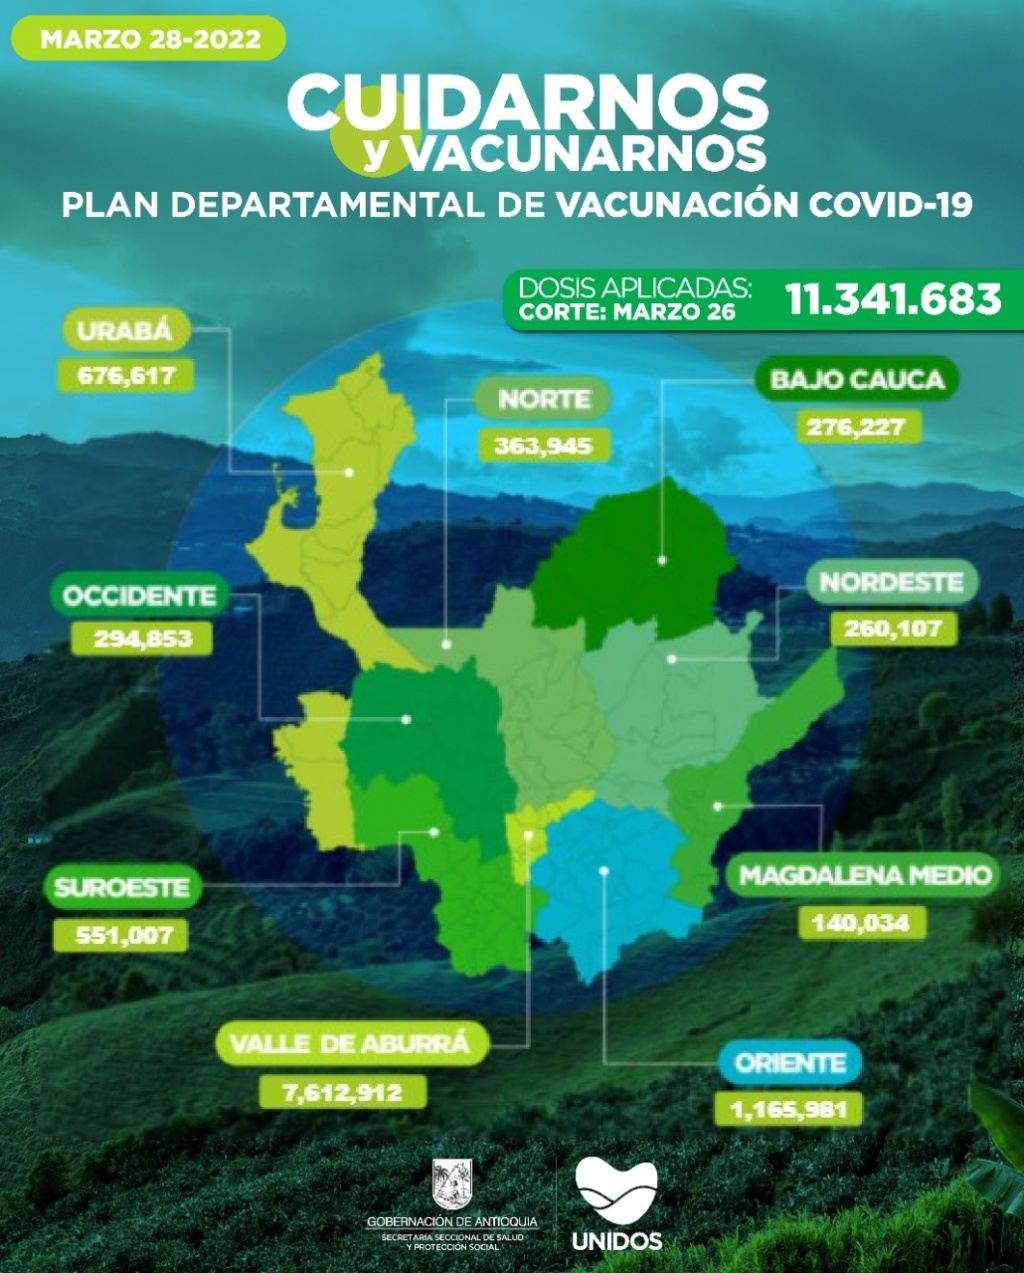 Con 12.051 dosis aplicadas, Antioquia llegó el 26 de marzo a 11.341.683 vacunados contra COVID19